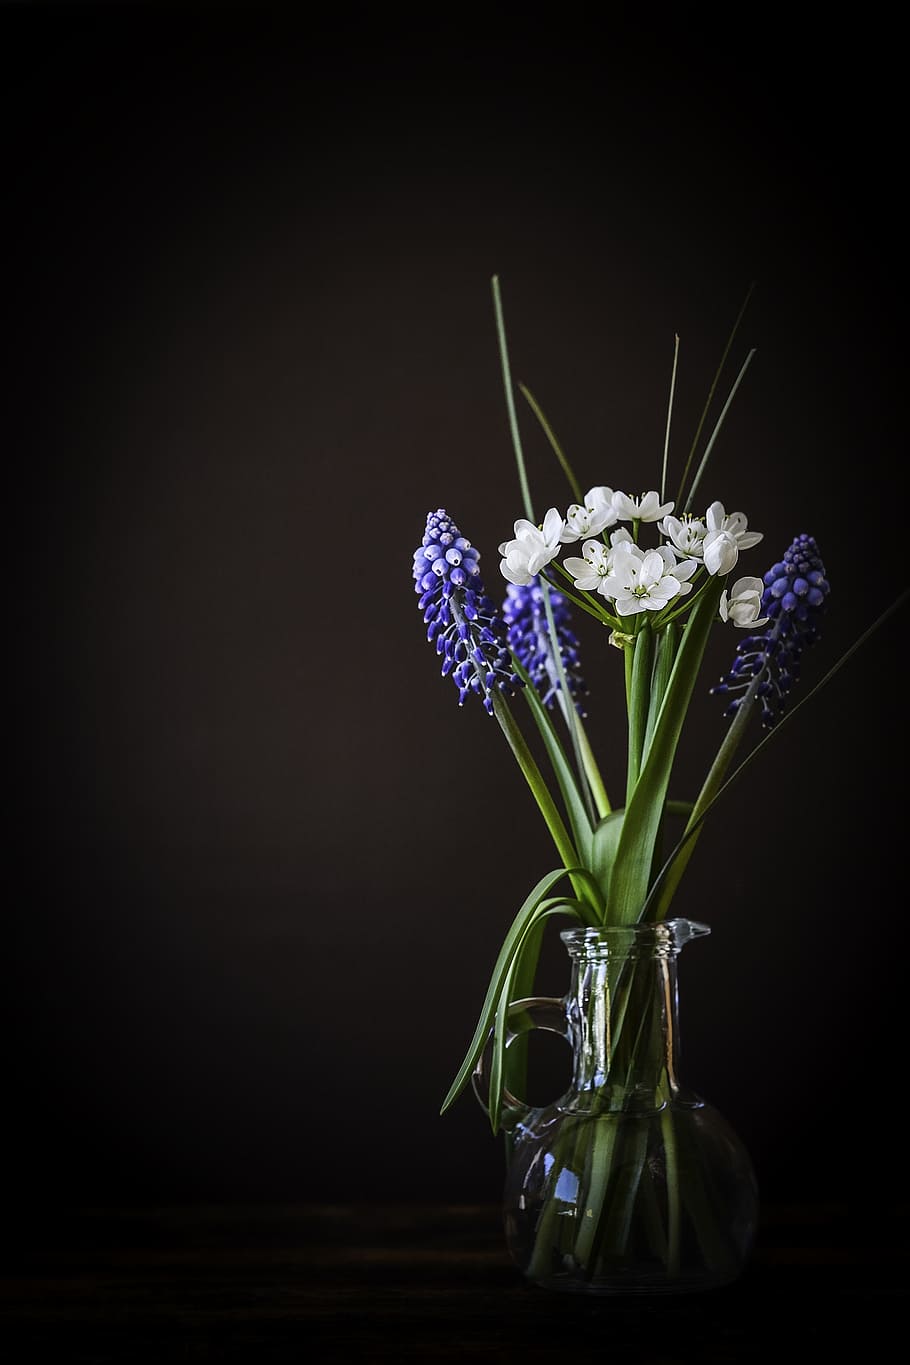 regla, fotografía de tercios, blanco, azul, flores, florero, vidrio, jacinto de uva, flor de puerro, cerrar